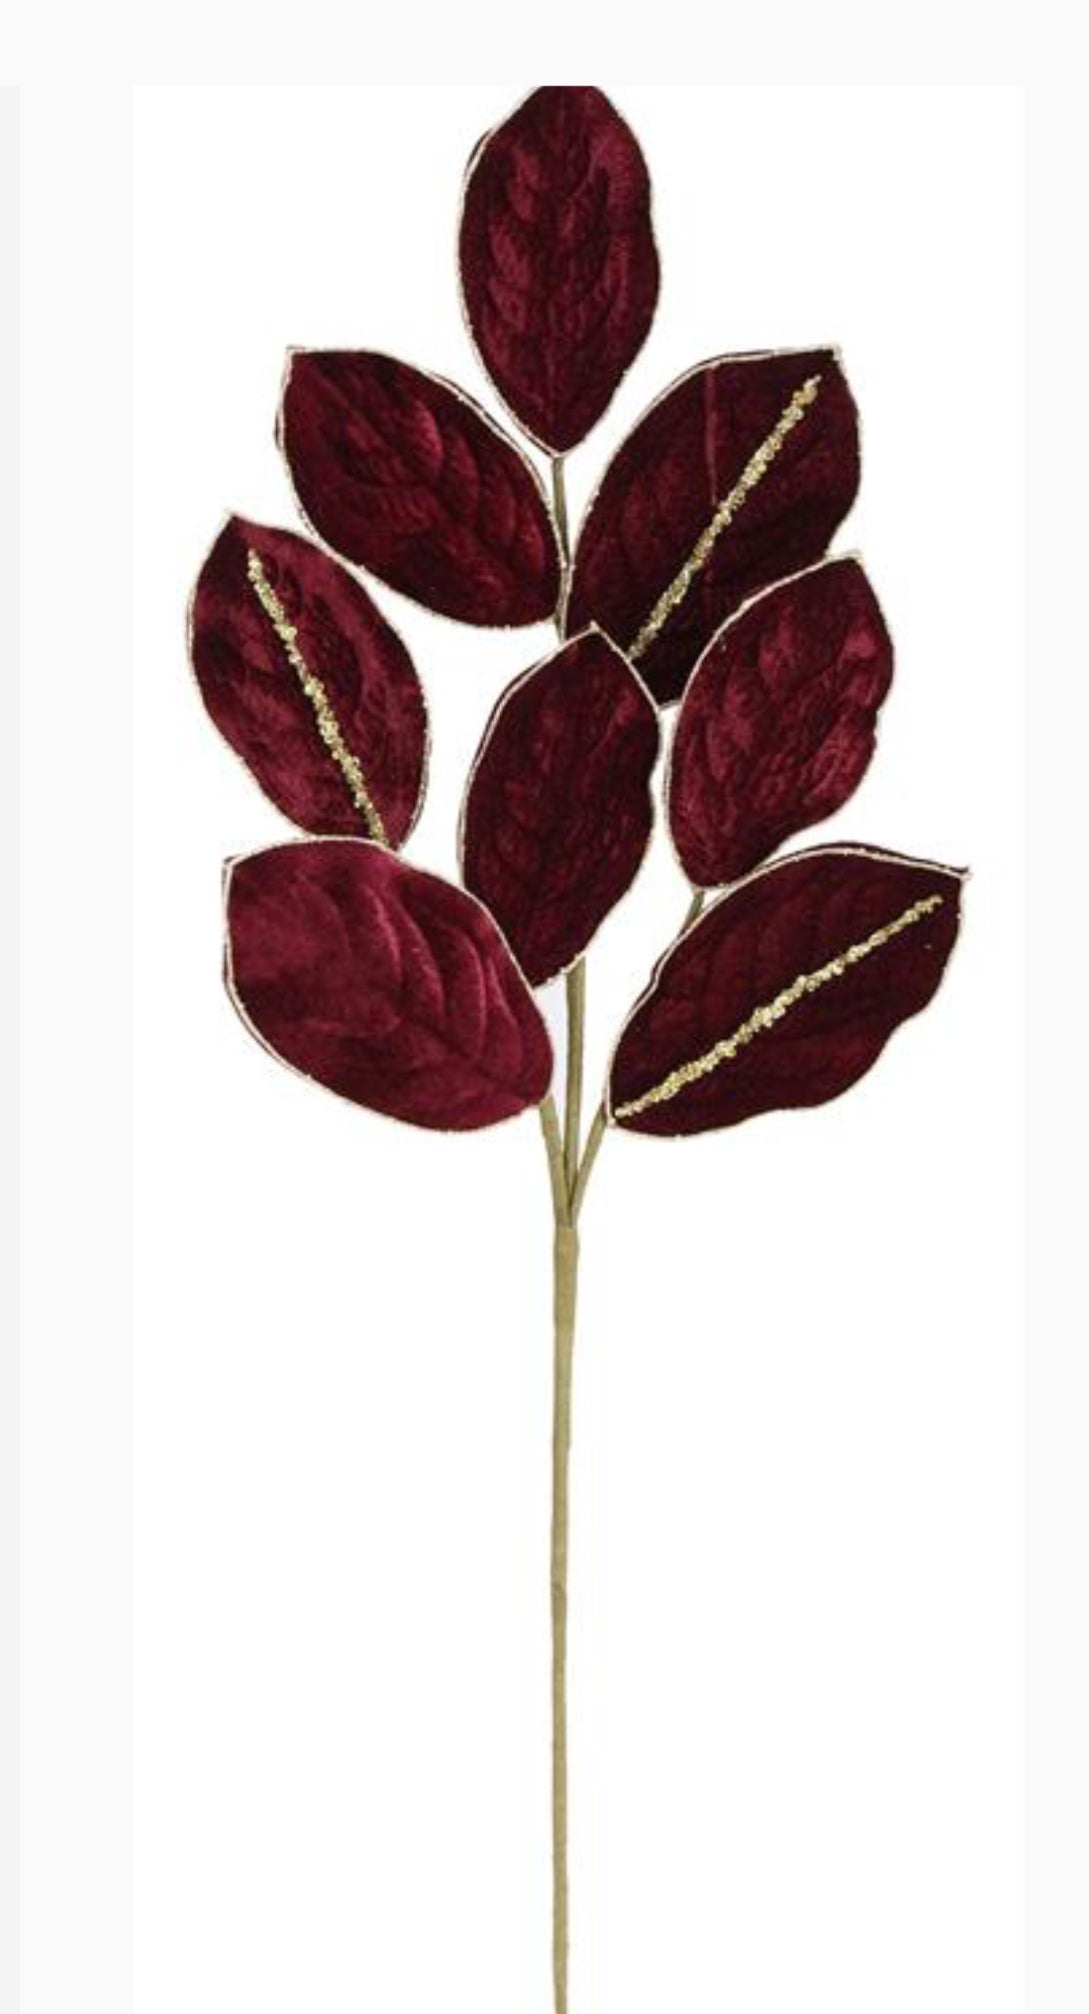 Burgundy velvet magnolia leaf spray - Greenery MarketgreeneryXF651-BU